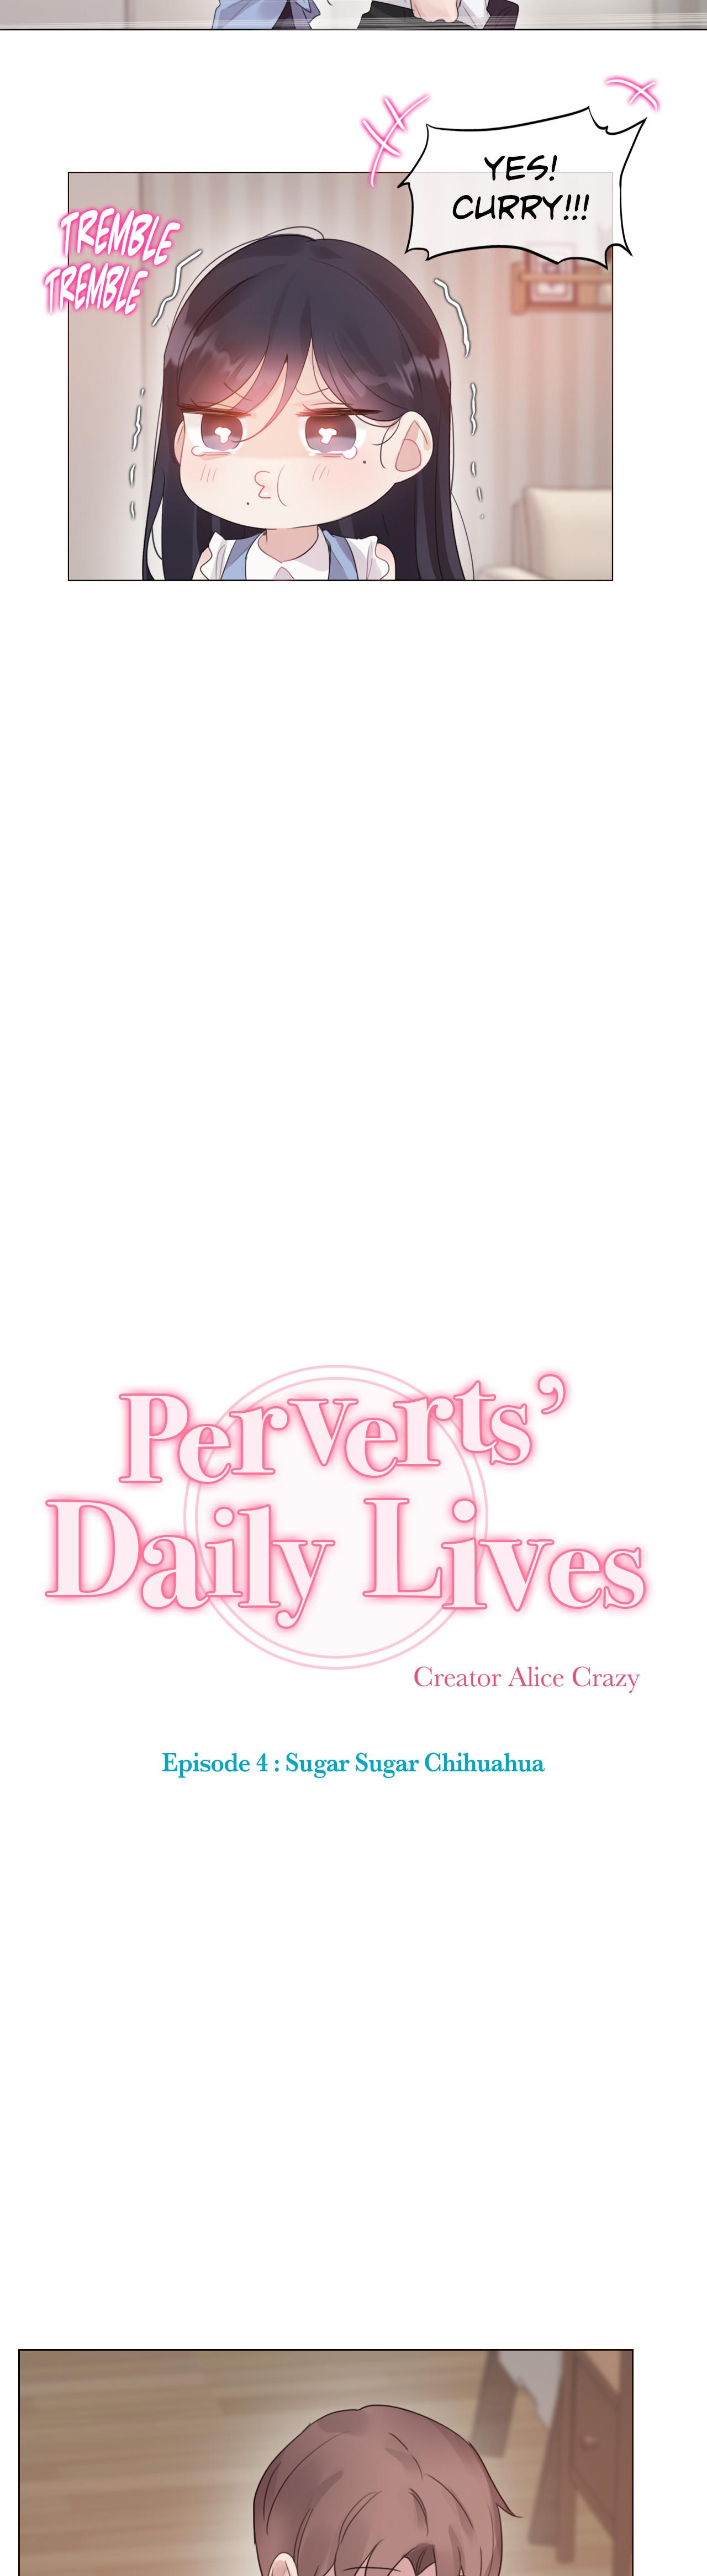 Perverts' Daily Lives Episode 4: Sugar Sugar Chihuahua 226